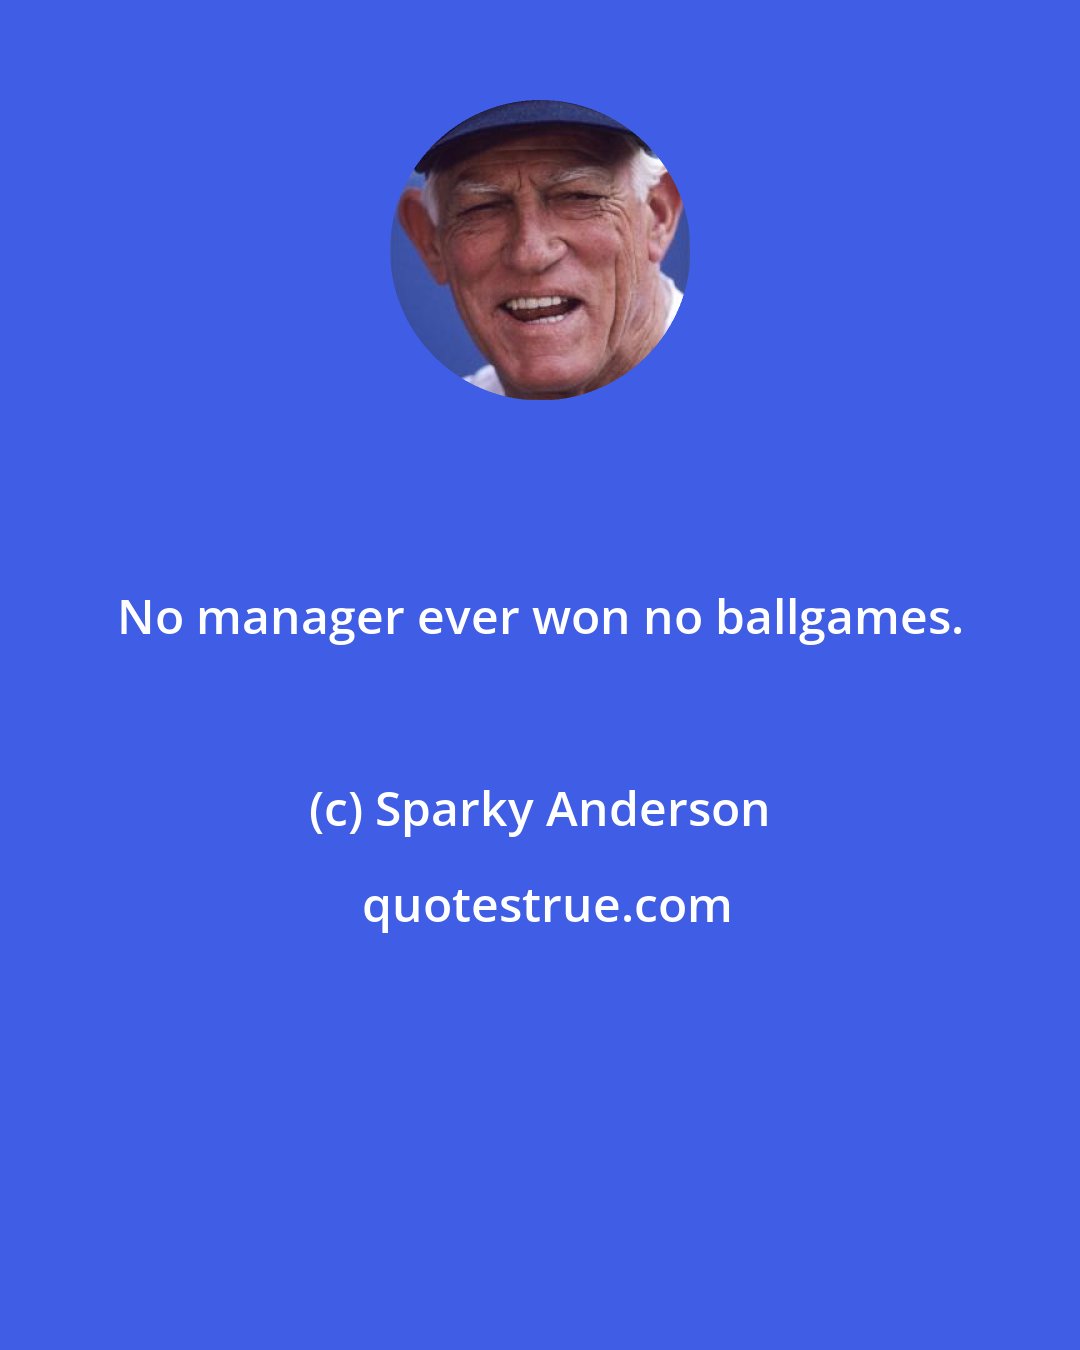 Sparky Anderson: No manager ever won no ballgames.